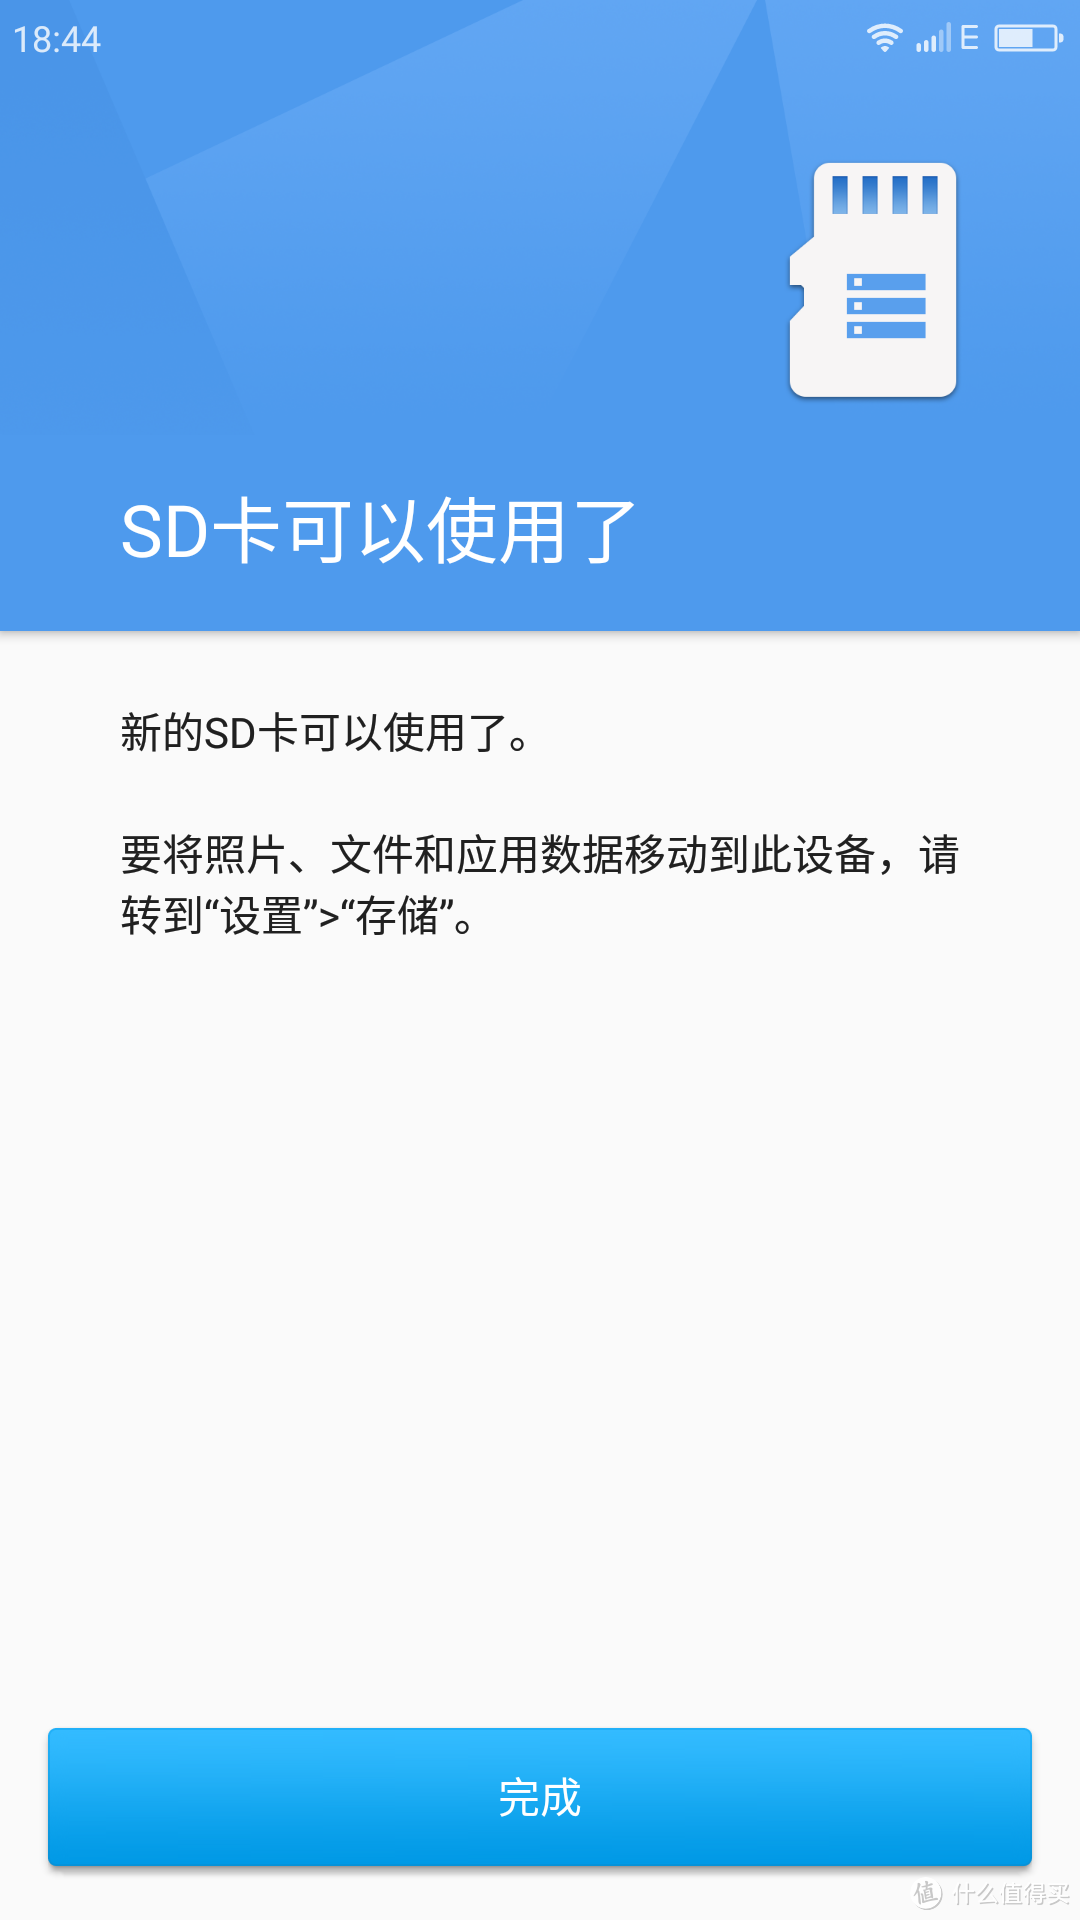 #本站首晒# 千元机玩转4GB RAM：奇虎360 N4 32GB 移动4G 智能手机